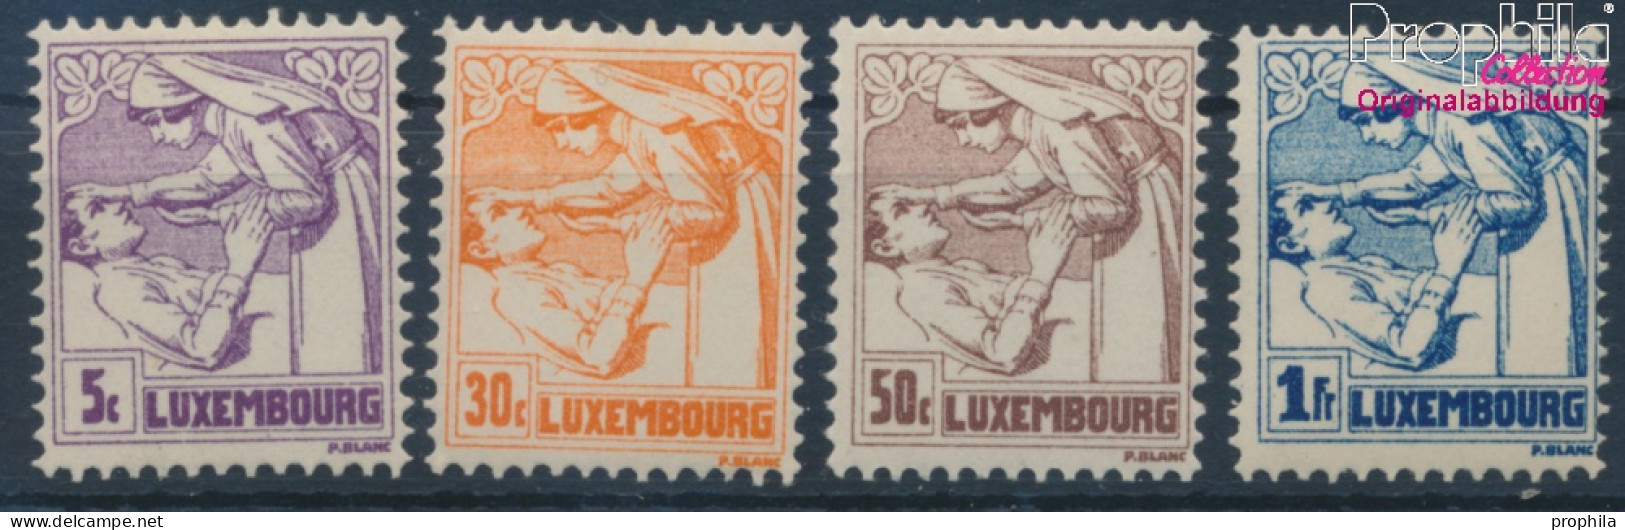 Luxemburg 157-160 (kompl.Ausg.) Postfrisch 1925 Tuberkulose (10363339 - Ongebruikt